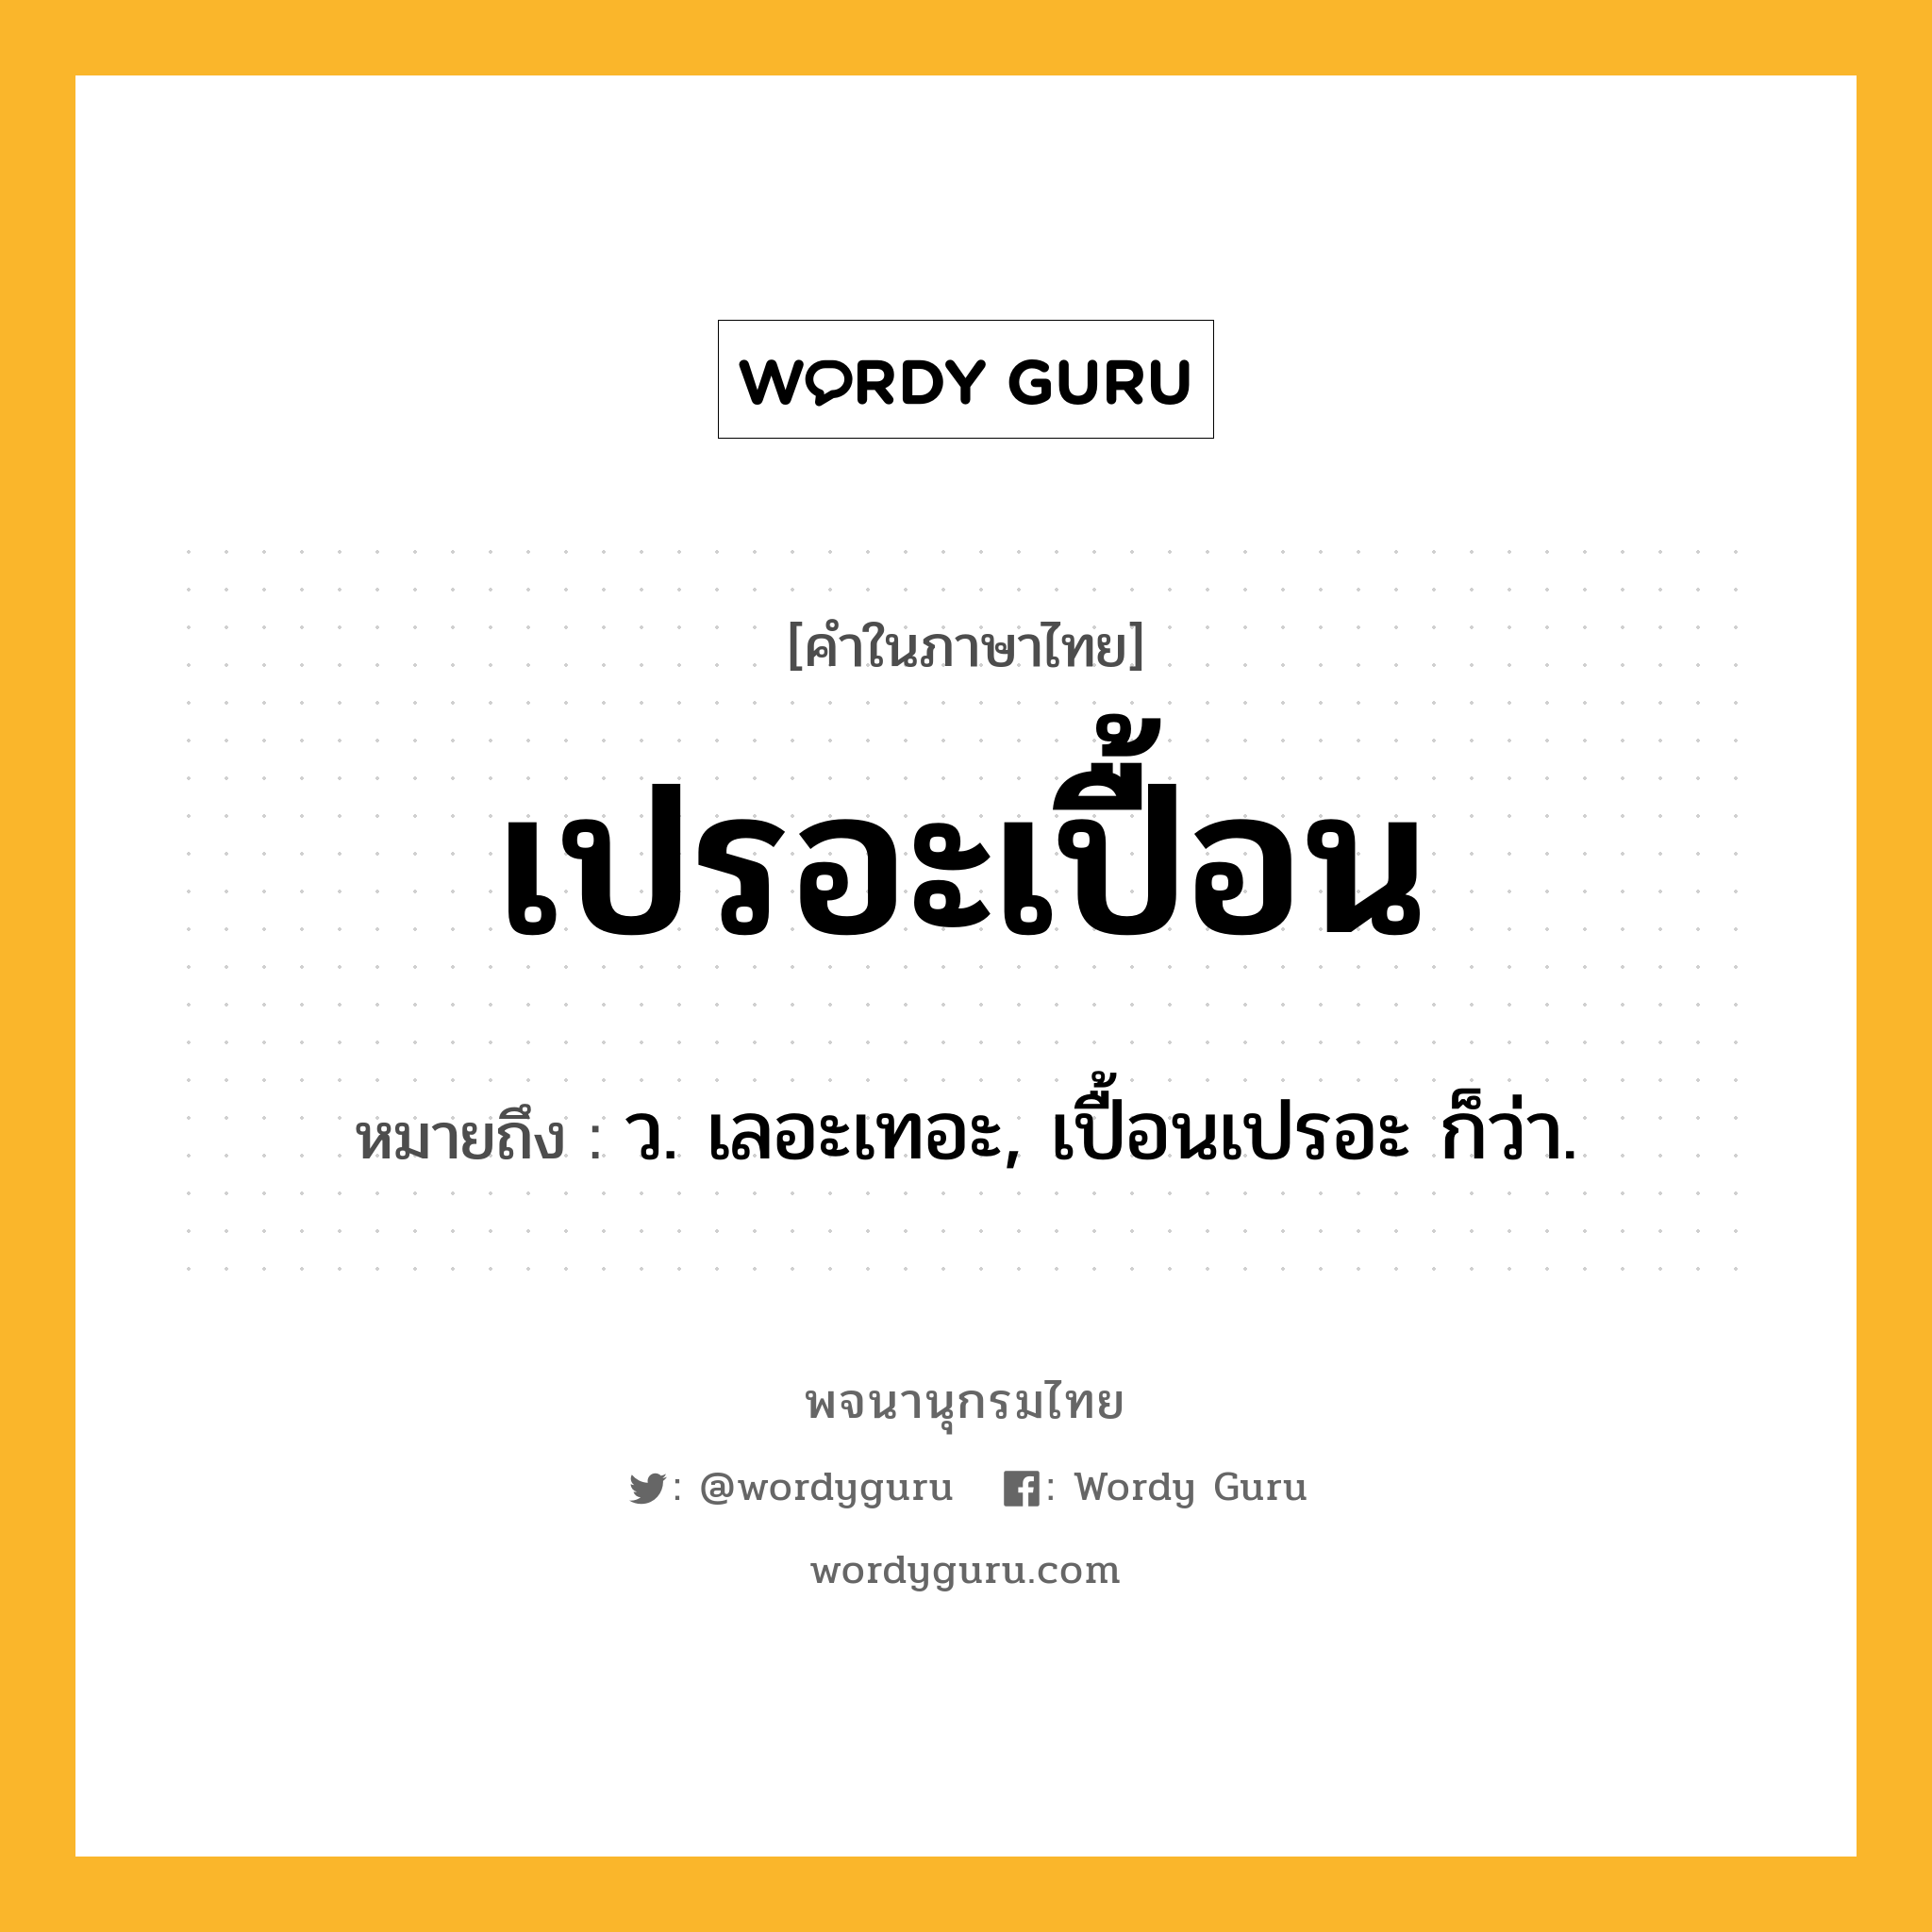 เปรอะเปื้อน หมายถึงอะไร?, คำในภาษาไทย เปรอะเปื้อน หมายถึง ว. เลอะเทอะ, เปื้อนเปรอะ ก็ว่า.